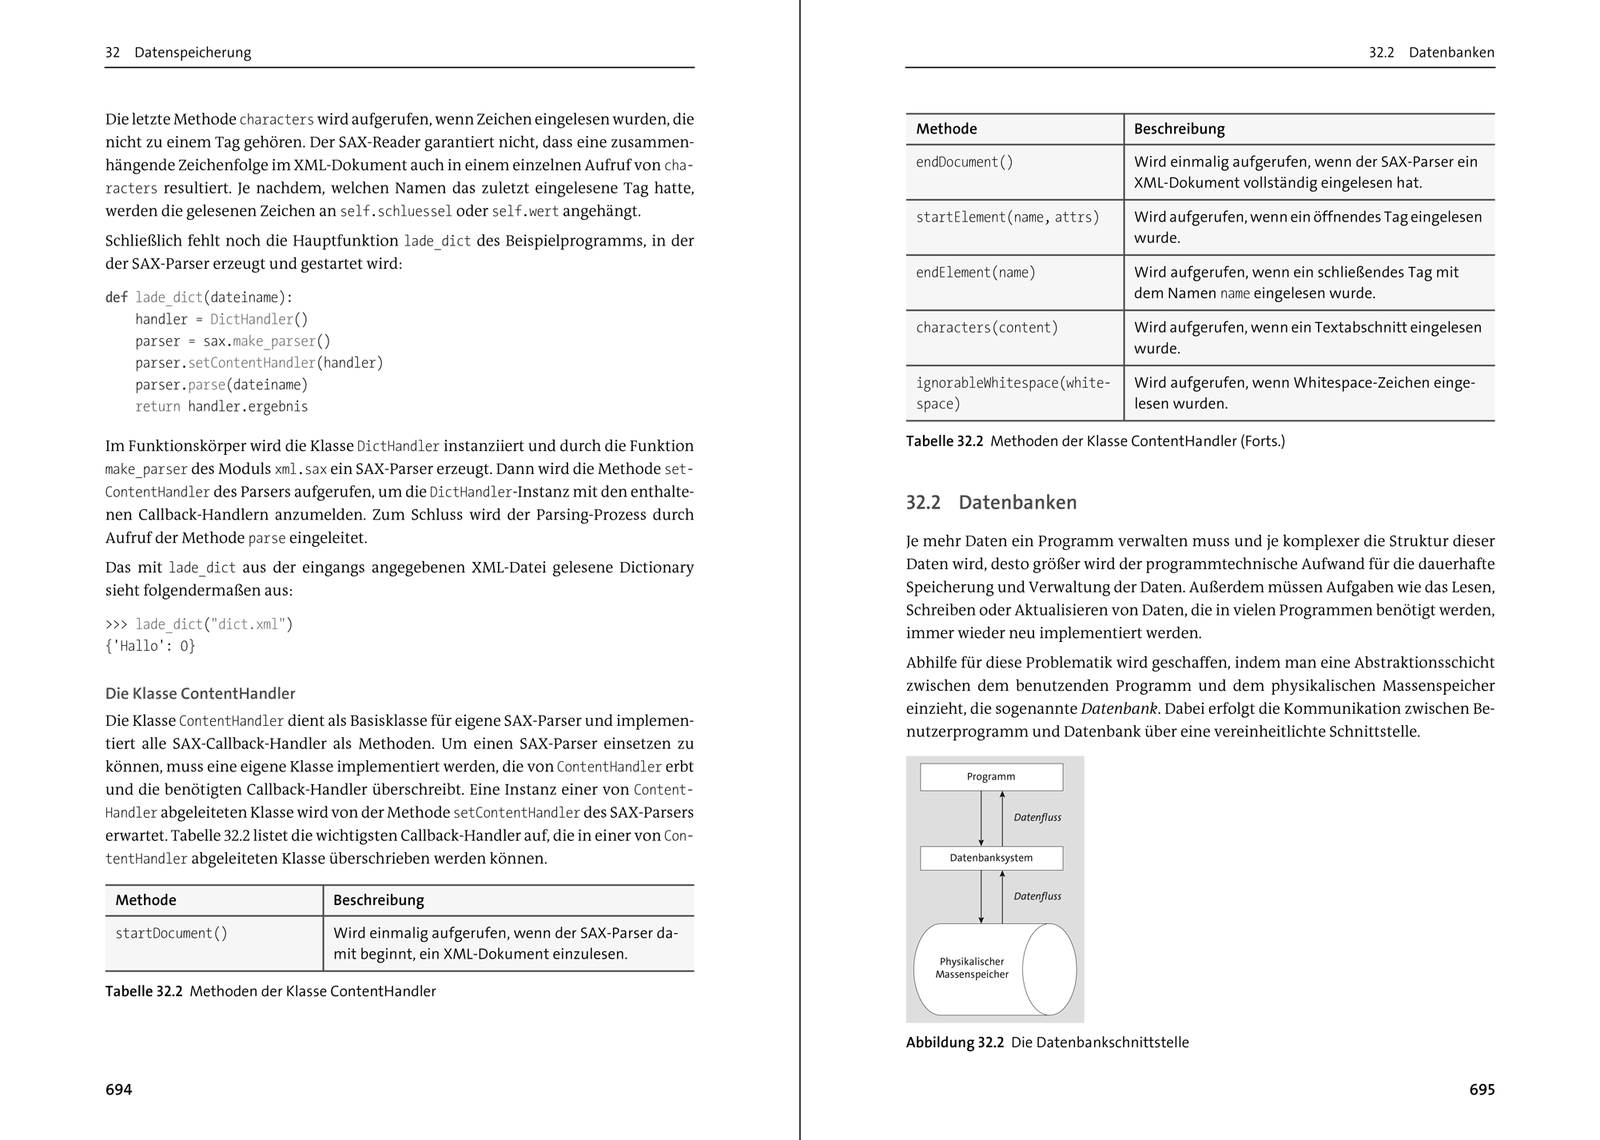  Python 3 - Das umfassende Handbuch (7. Auflage)